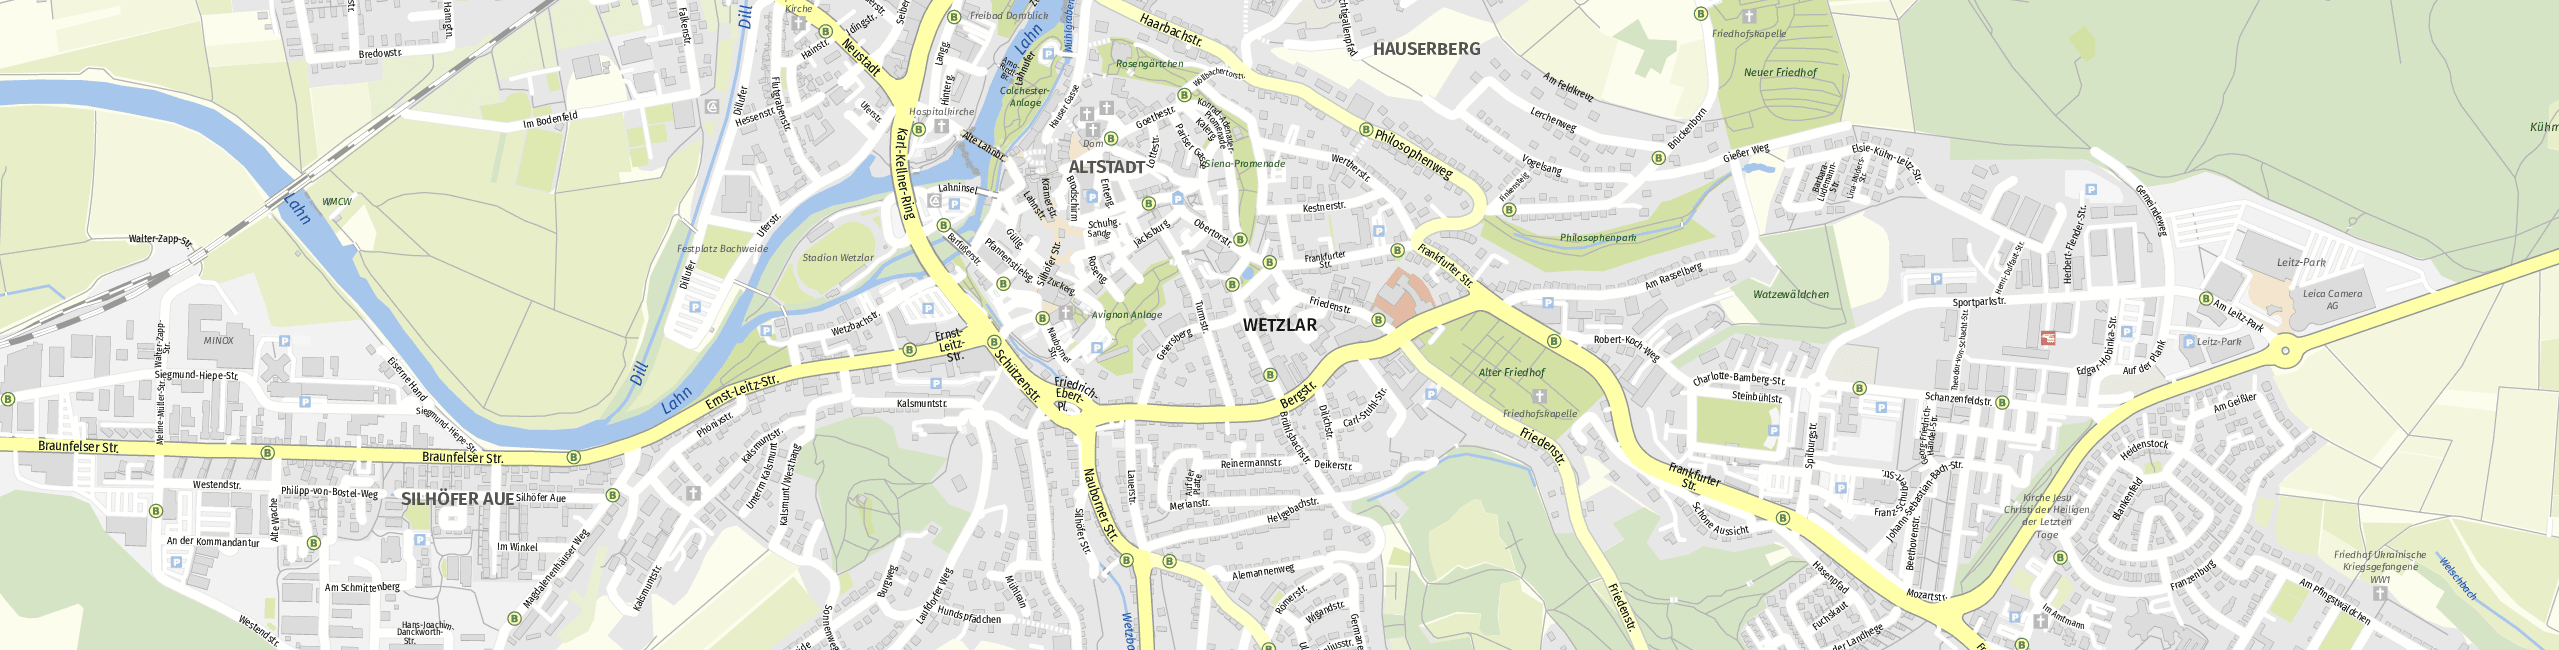 Stadtplan Wetzlar zum Downloaden.